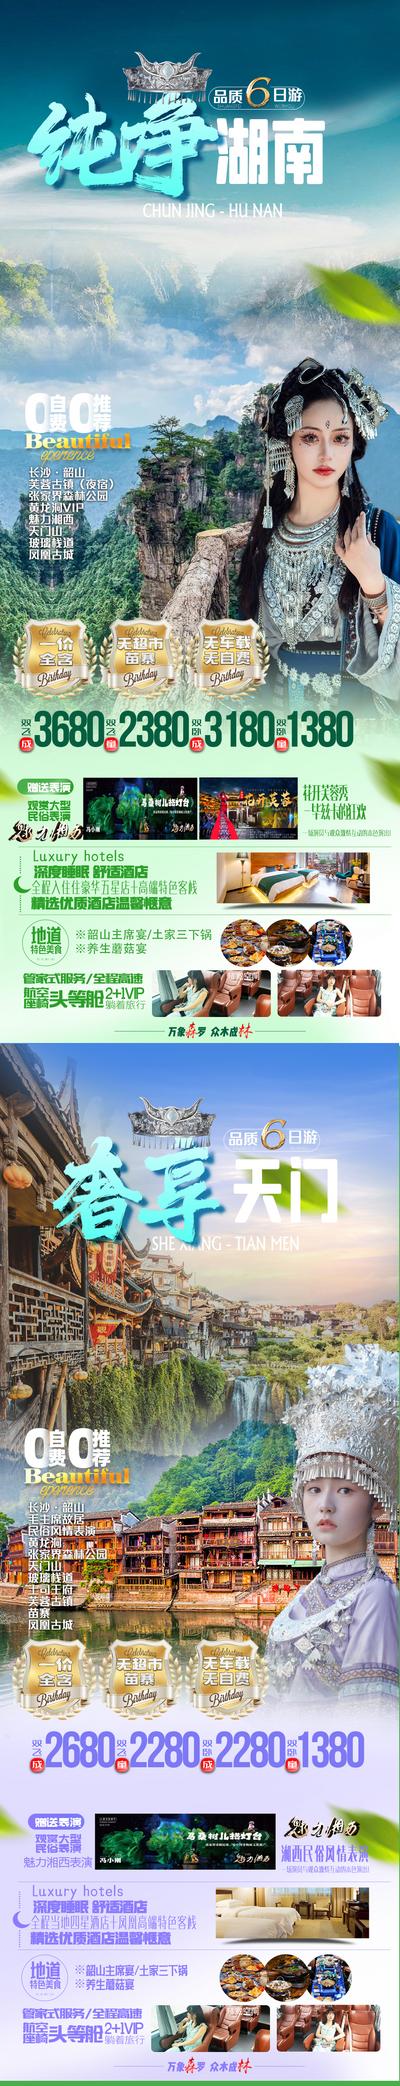 南门网 张家界旅游海报凤凰古城系列海报